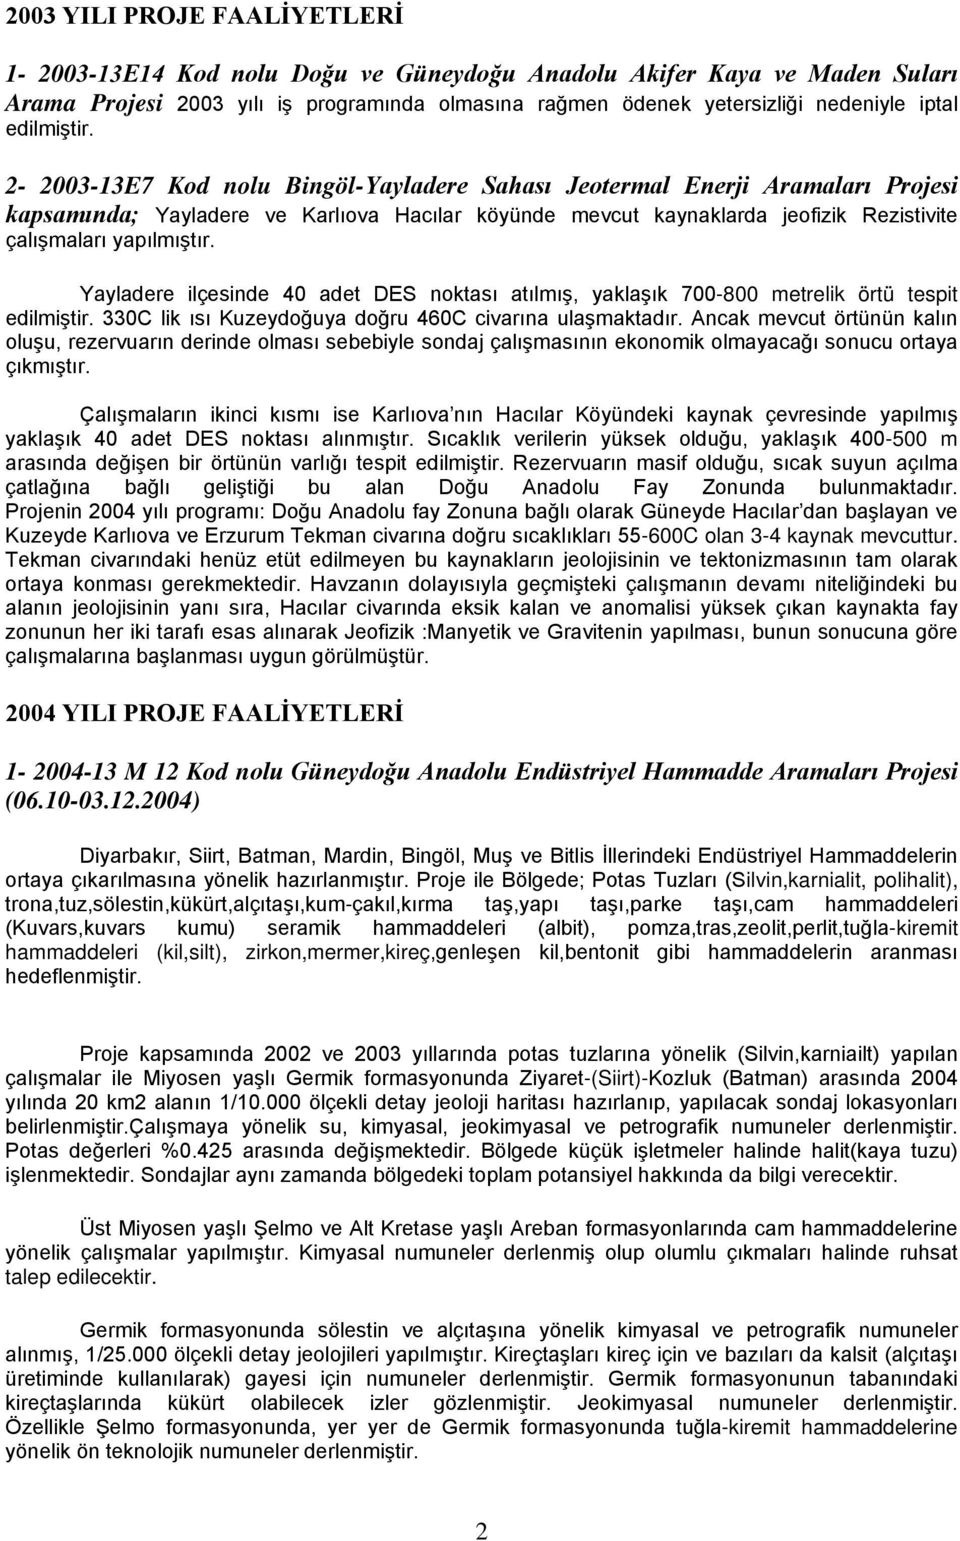 2-2003-13E7 Kod nolu Bingöl-Yayladere Sahası Jeotermal Enerji Aramaları Projesi kapsamında; Yayladere ve Karlıova Hacılar köyünde mevcut kaynaklarda jeofizik Rezistivite çalışmaları yapılmıştır.